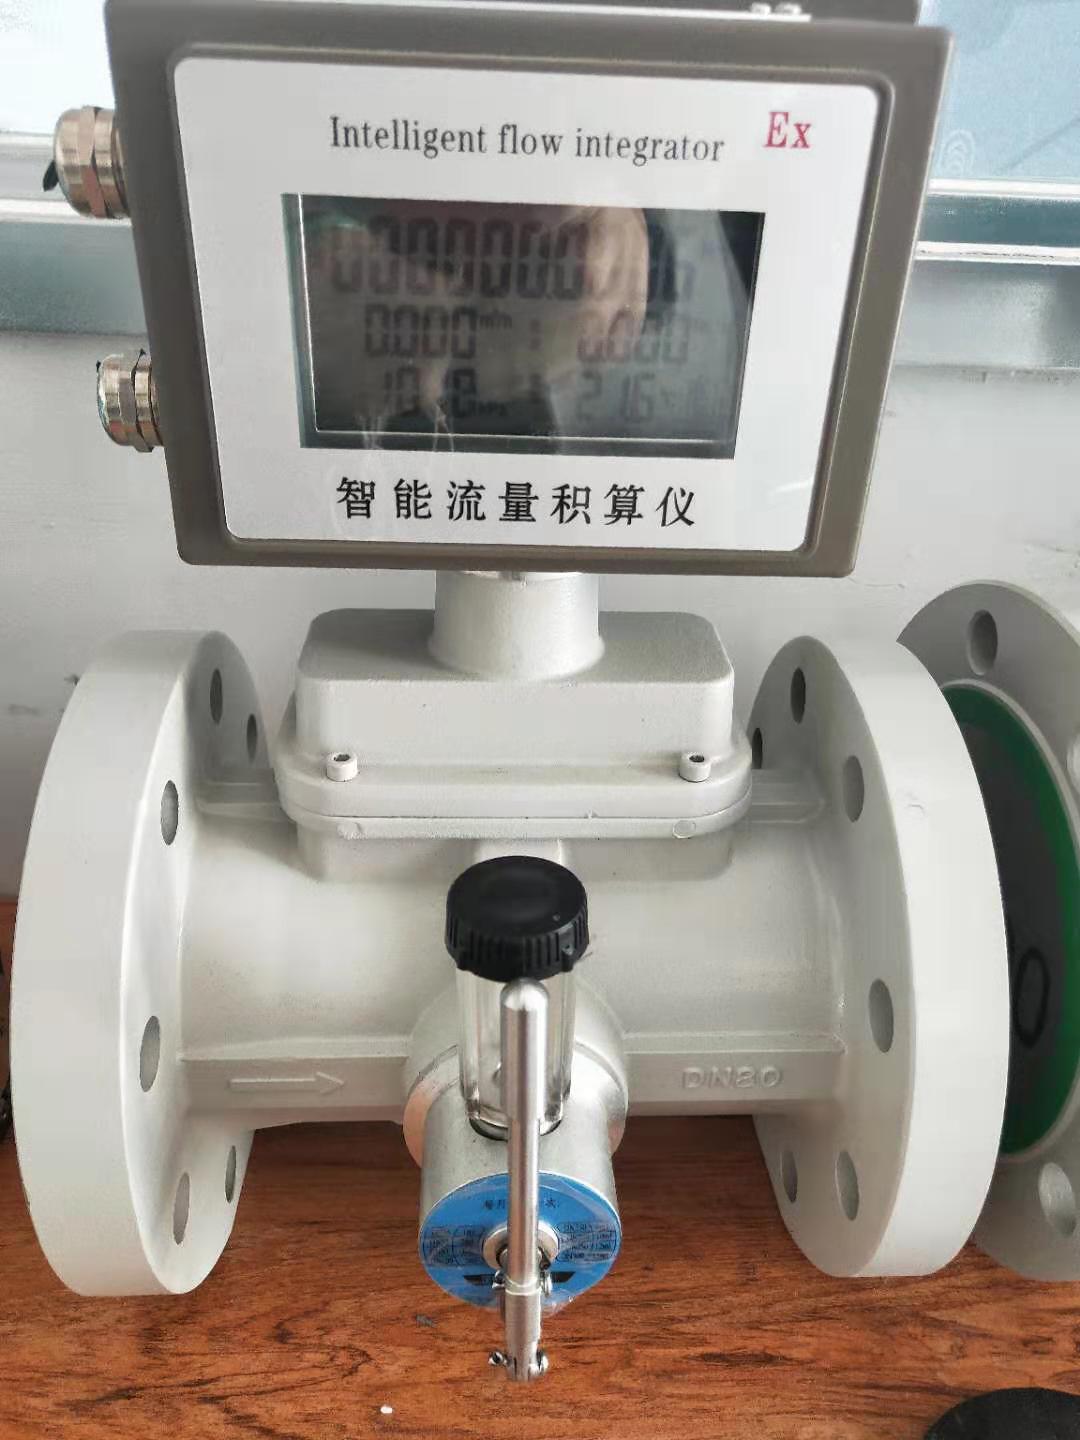 上海市涡轮流量计厂家涡轮流量计 气体流量计  温压补偿涡轮流量计  液体涡轮流量计  一体式涡轮流量计